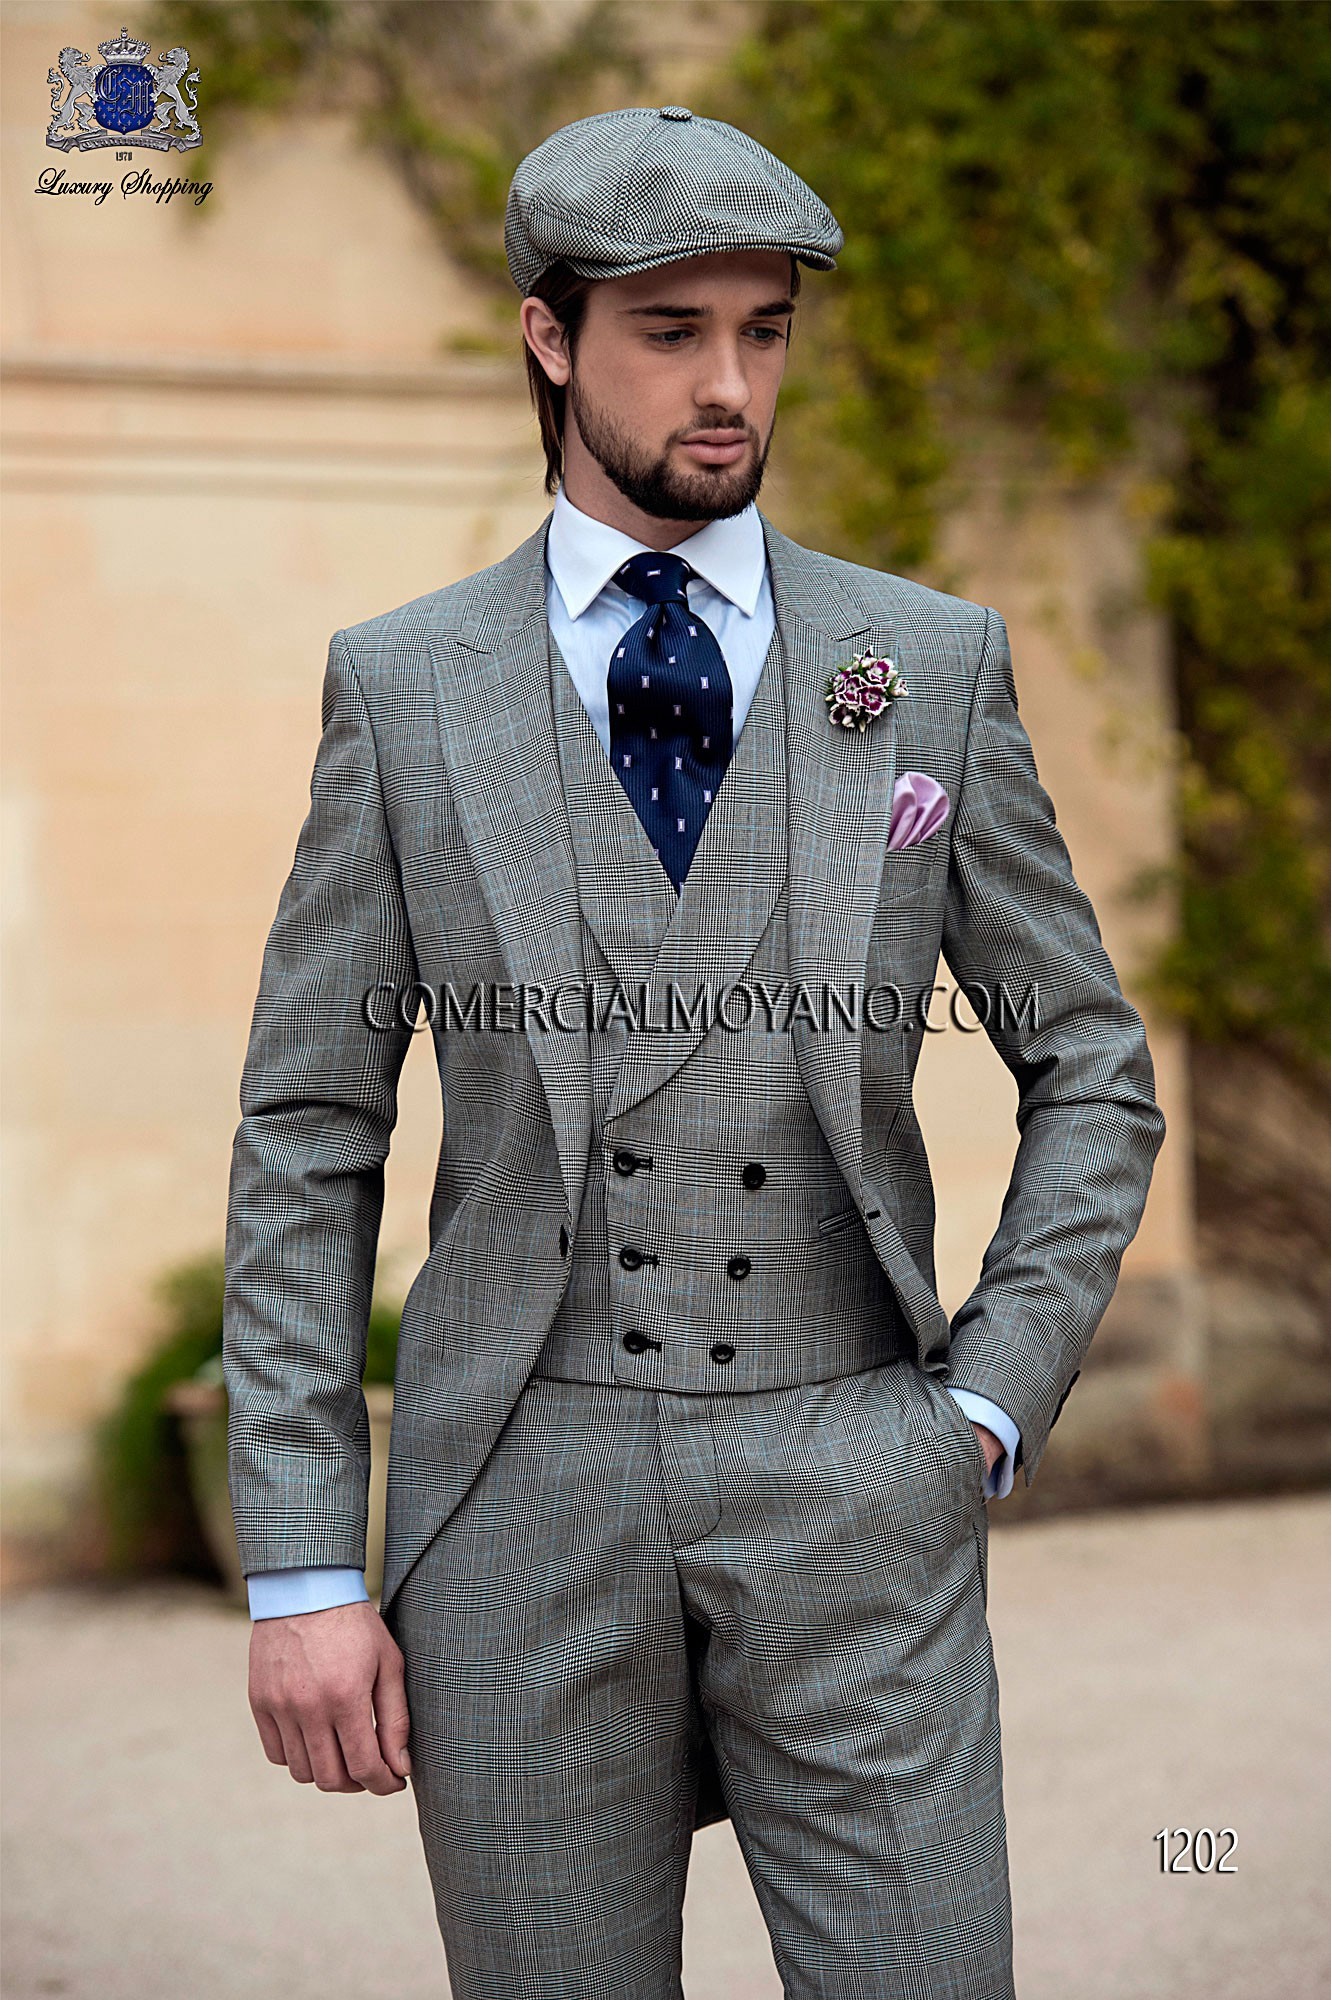 Traje Gentleman de novio principe de gales modelo: 1202 Mario Moyano colección Gentleman